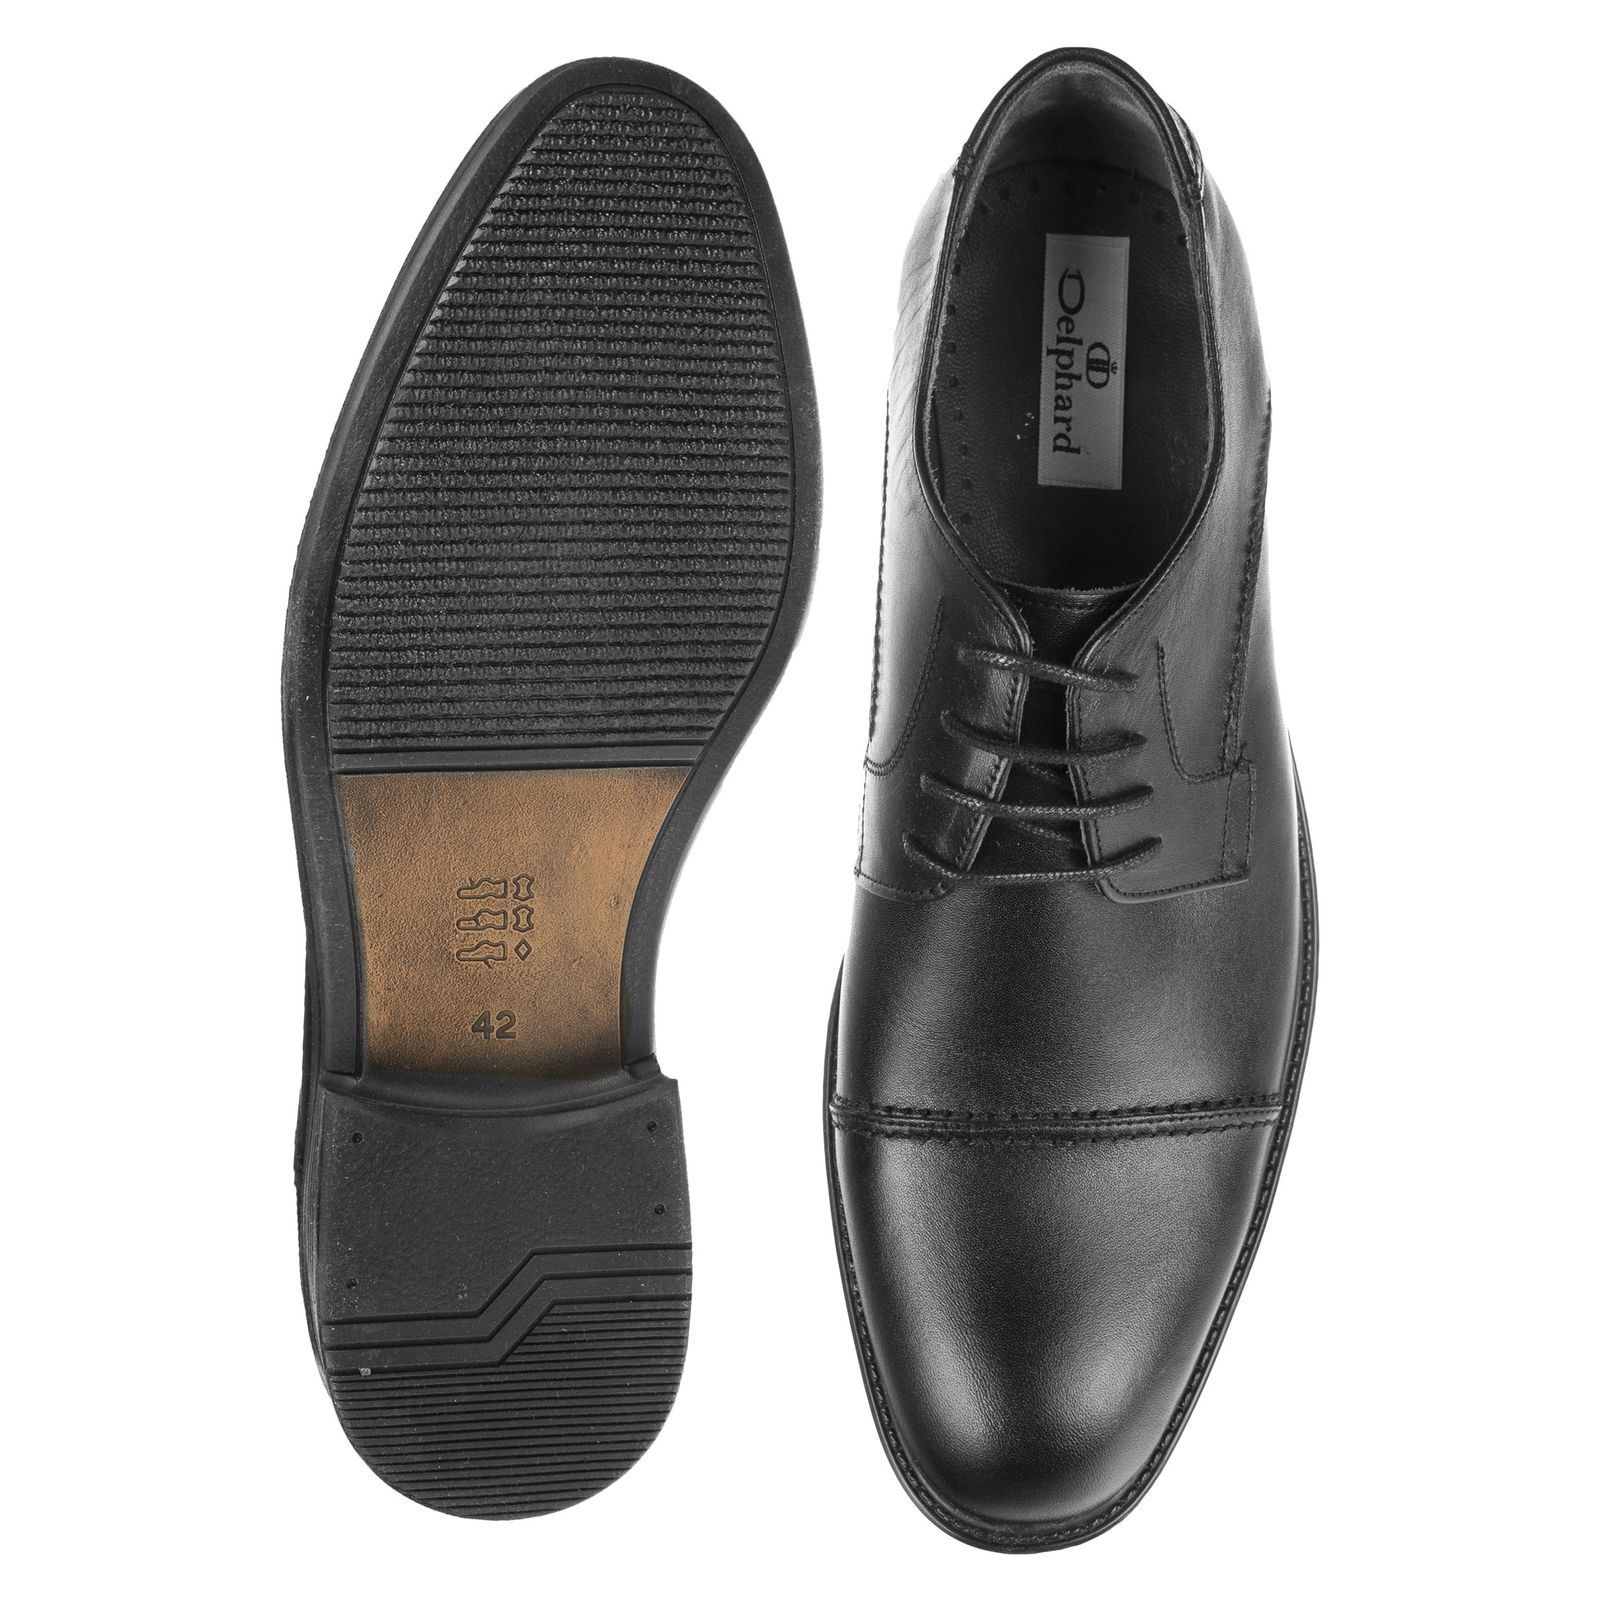 کفش مردانه دلفارد مدل 7219c503-101 - مشکی - 6